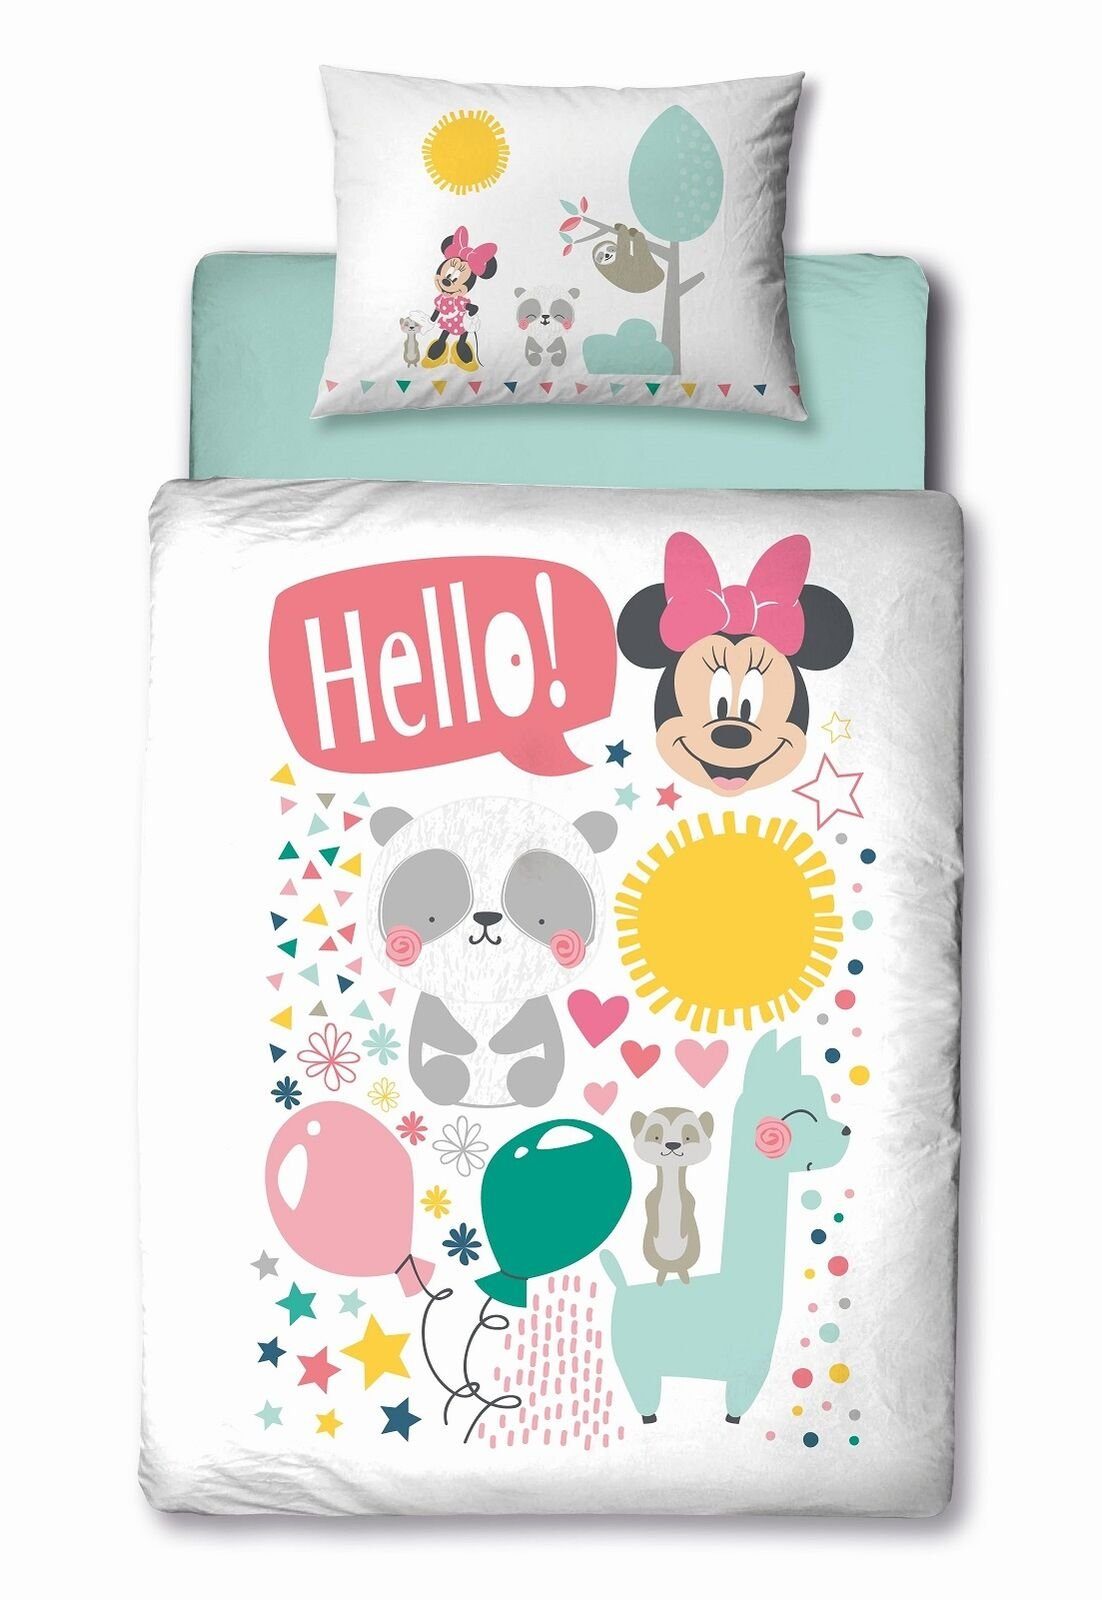 Babybettwäsche Disney Minnie Maus Baby Kleinkinder Bettwäsche Set, Disney, 2 teilig, Deckenbezug 100x135 cm - Kissenbezug 40x60 cm